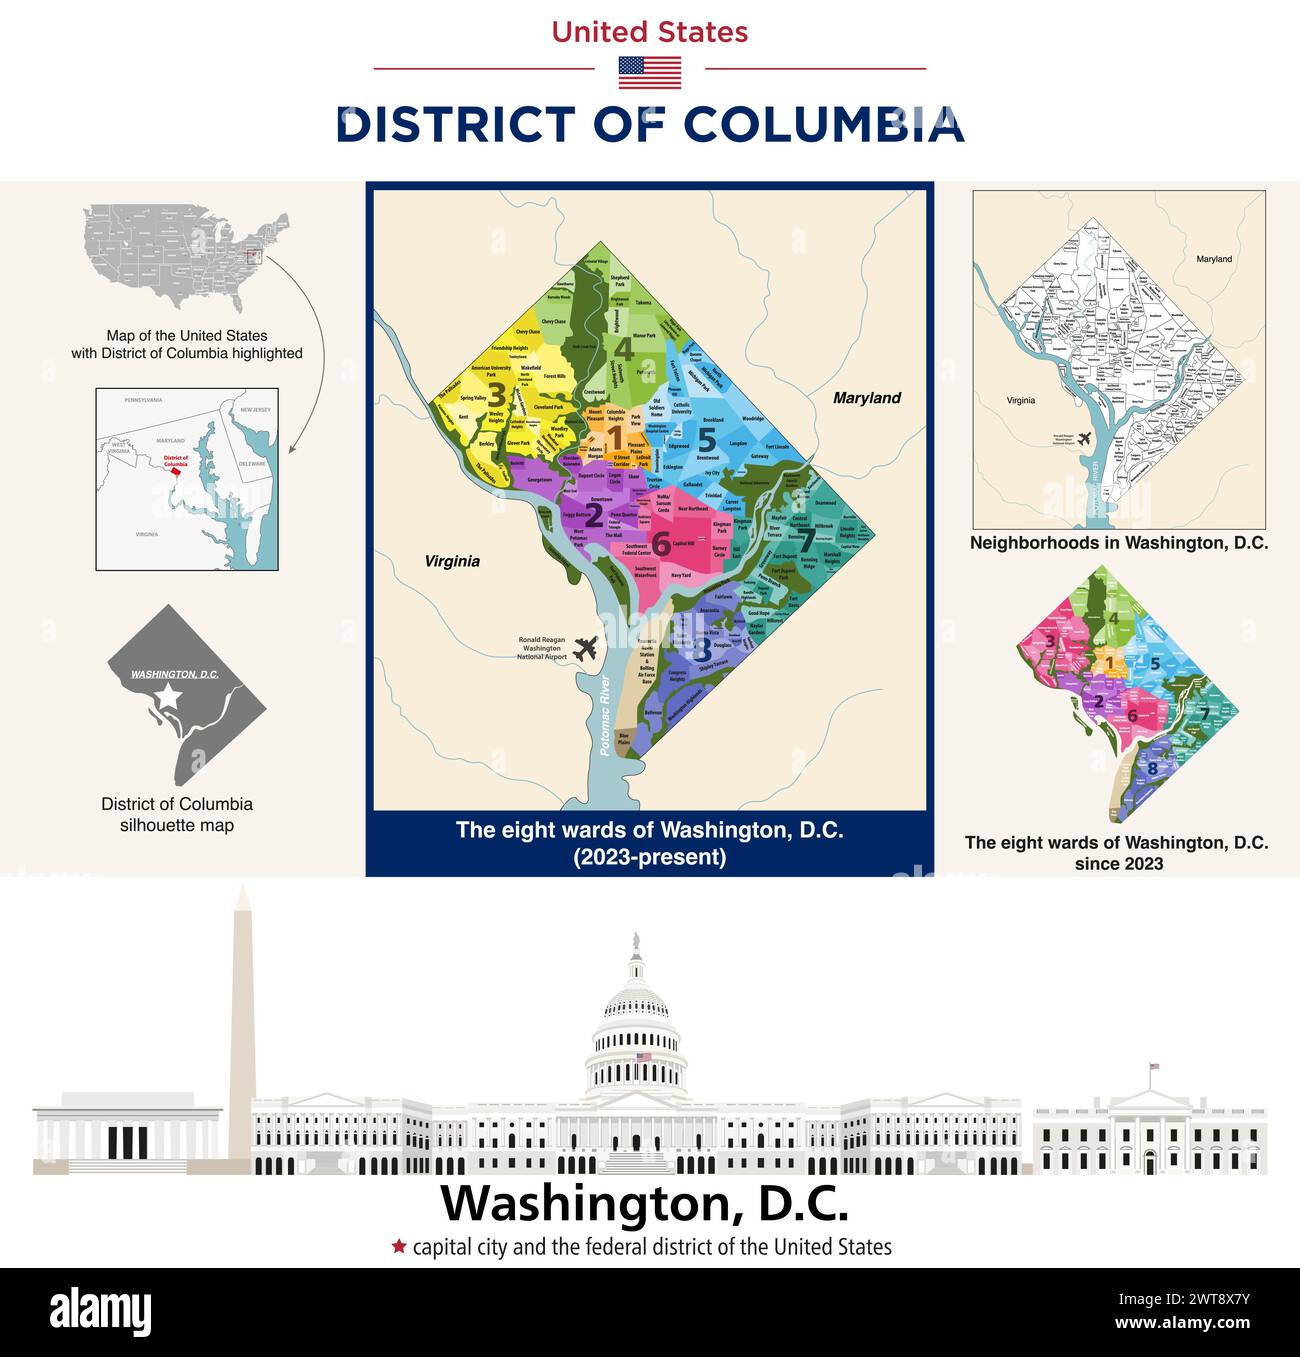 Karte von Bezirken und Stadtteilen im District of Columbia. Skyline der Stadt Washinton, D.C. Stock Vektor